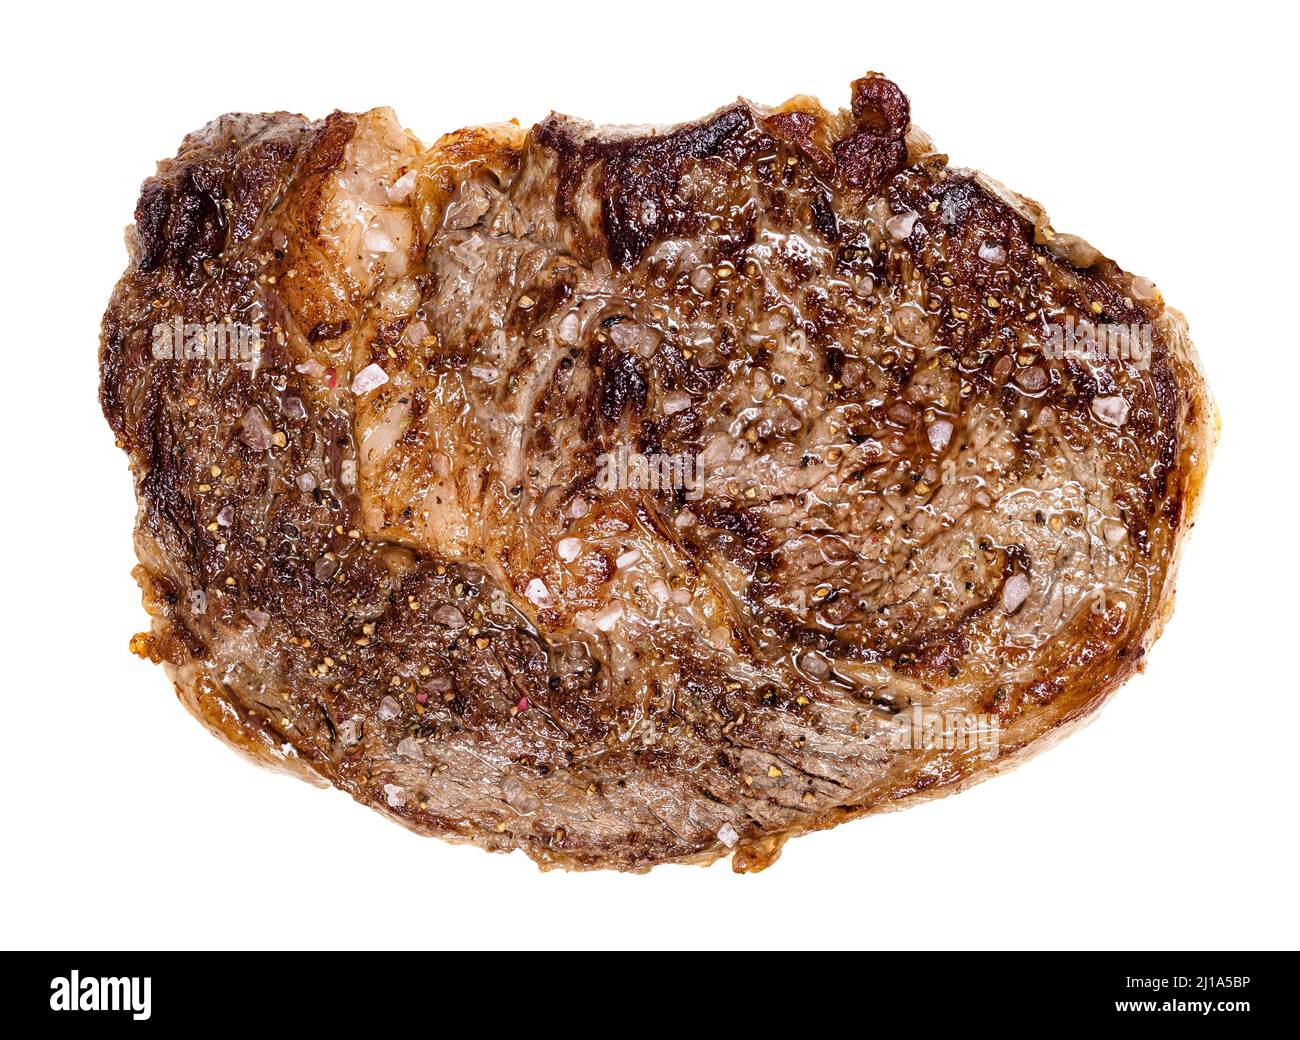 vue de dessus du steak de bœuf à la ribeye rôti isolé sur fond blanc Banque D'Images